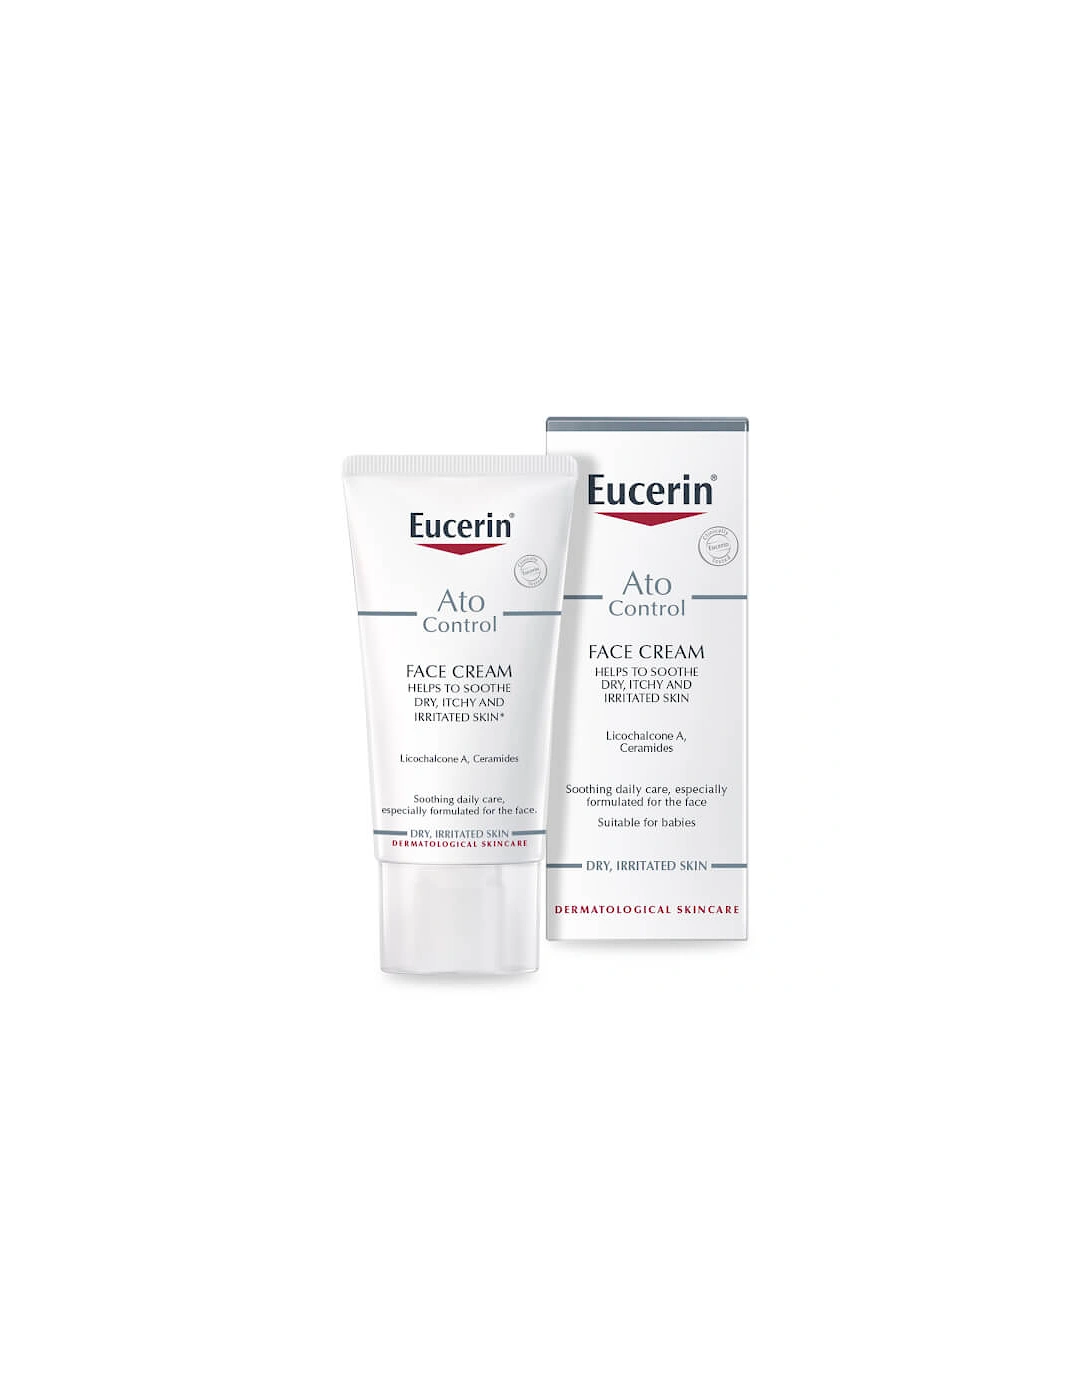 AtoControl Face Care Cream 50ml - Eucerin, 2 of 1